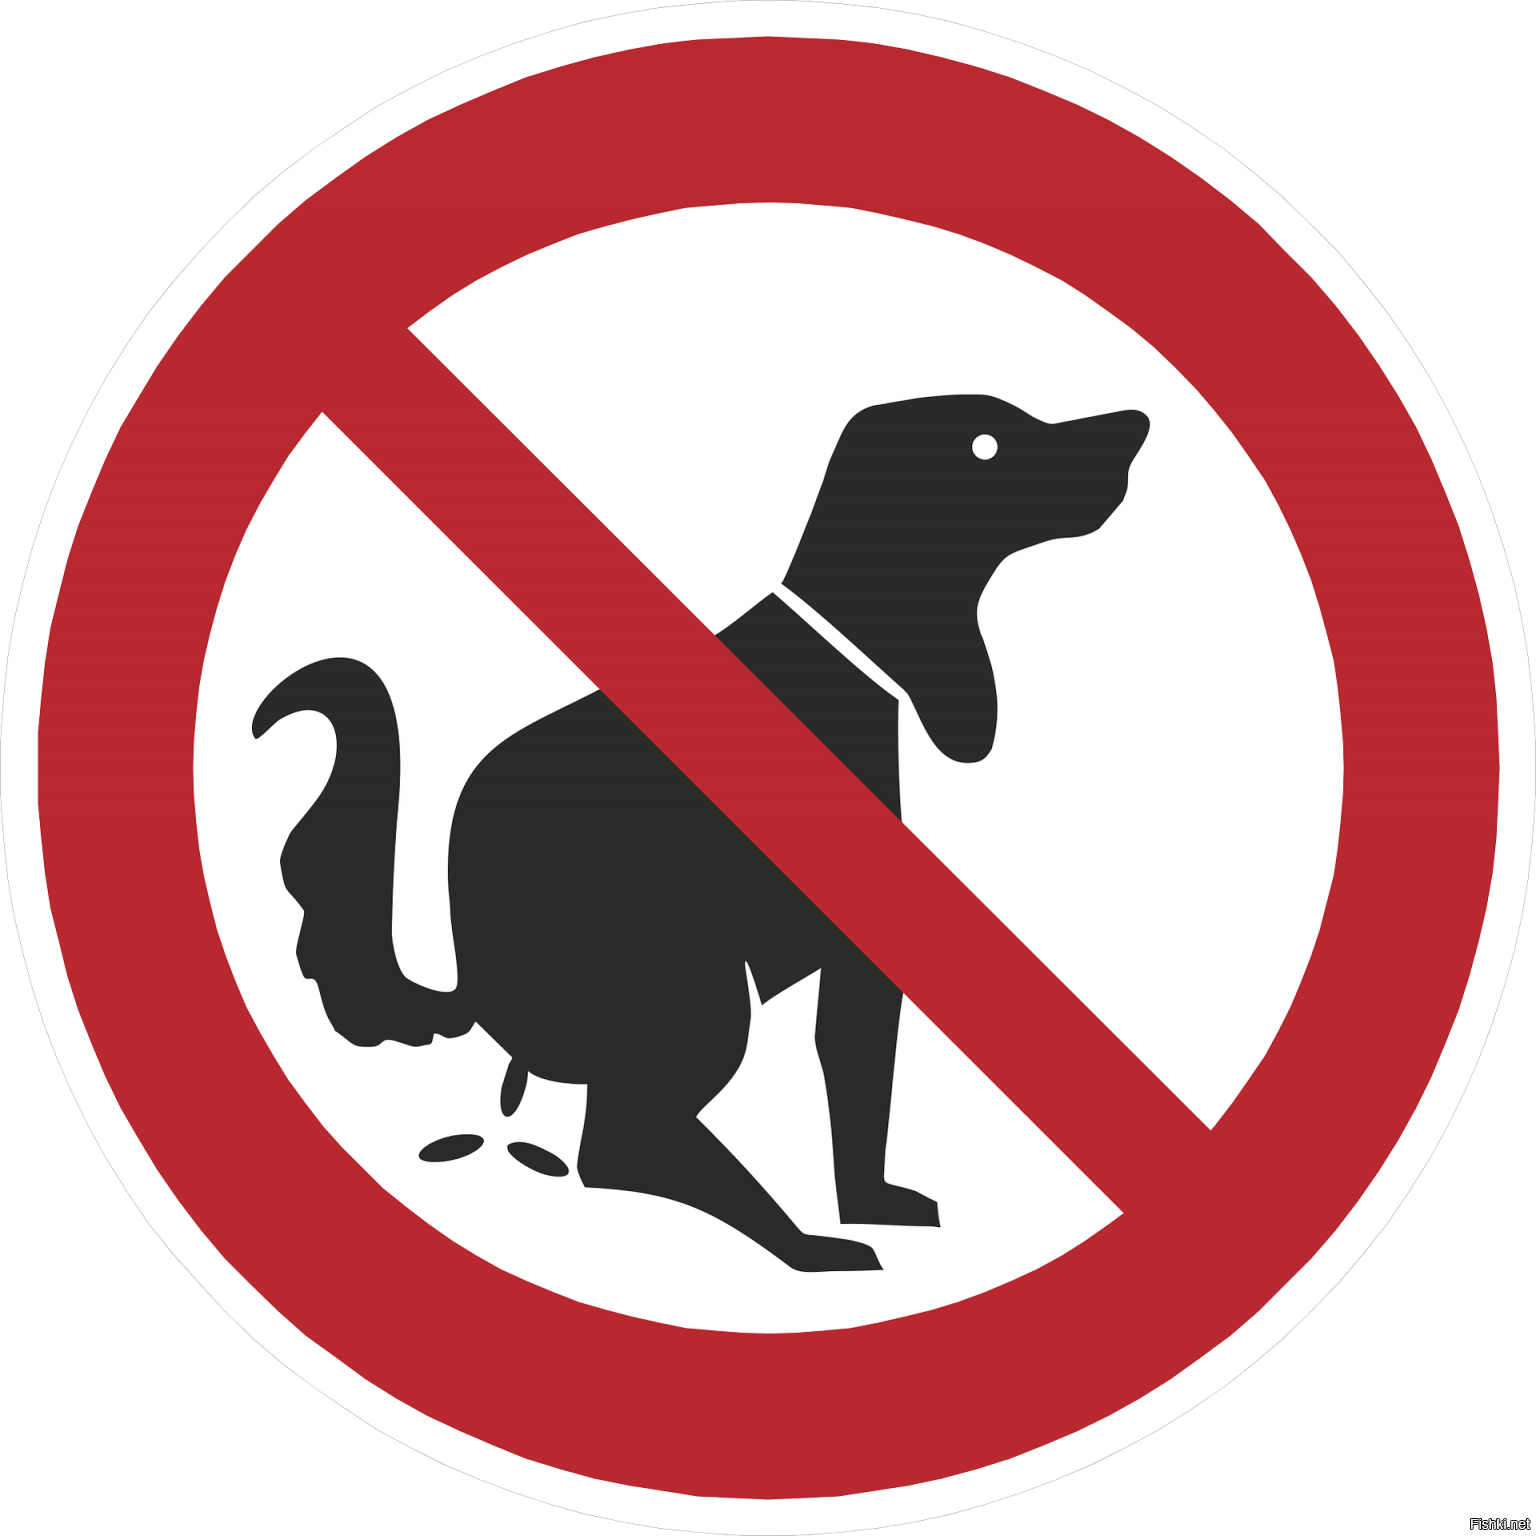 Знак выгул собак запрещен